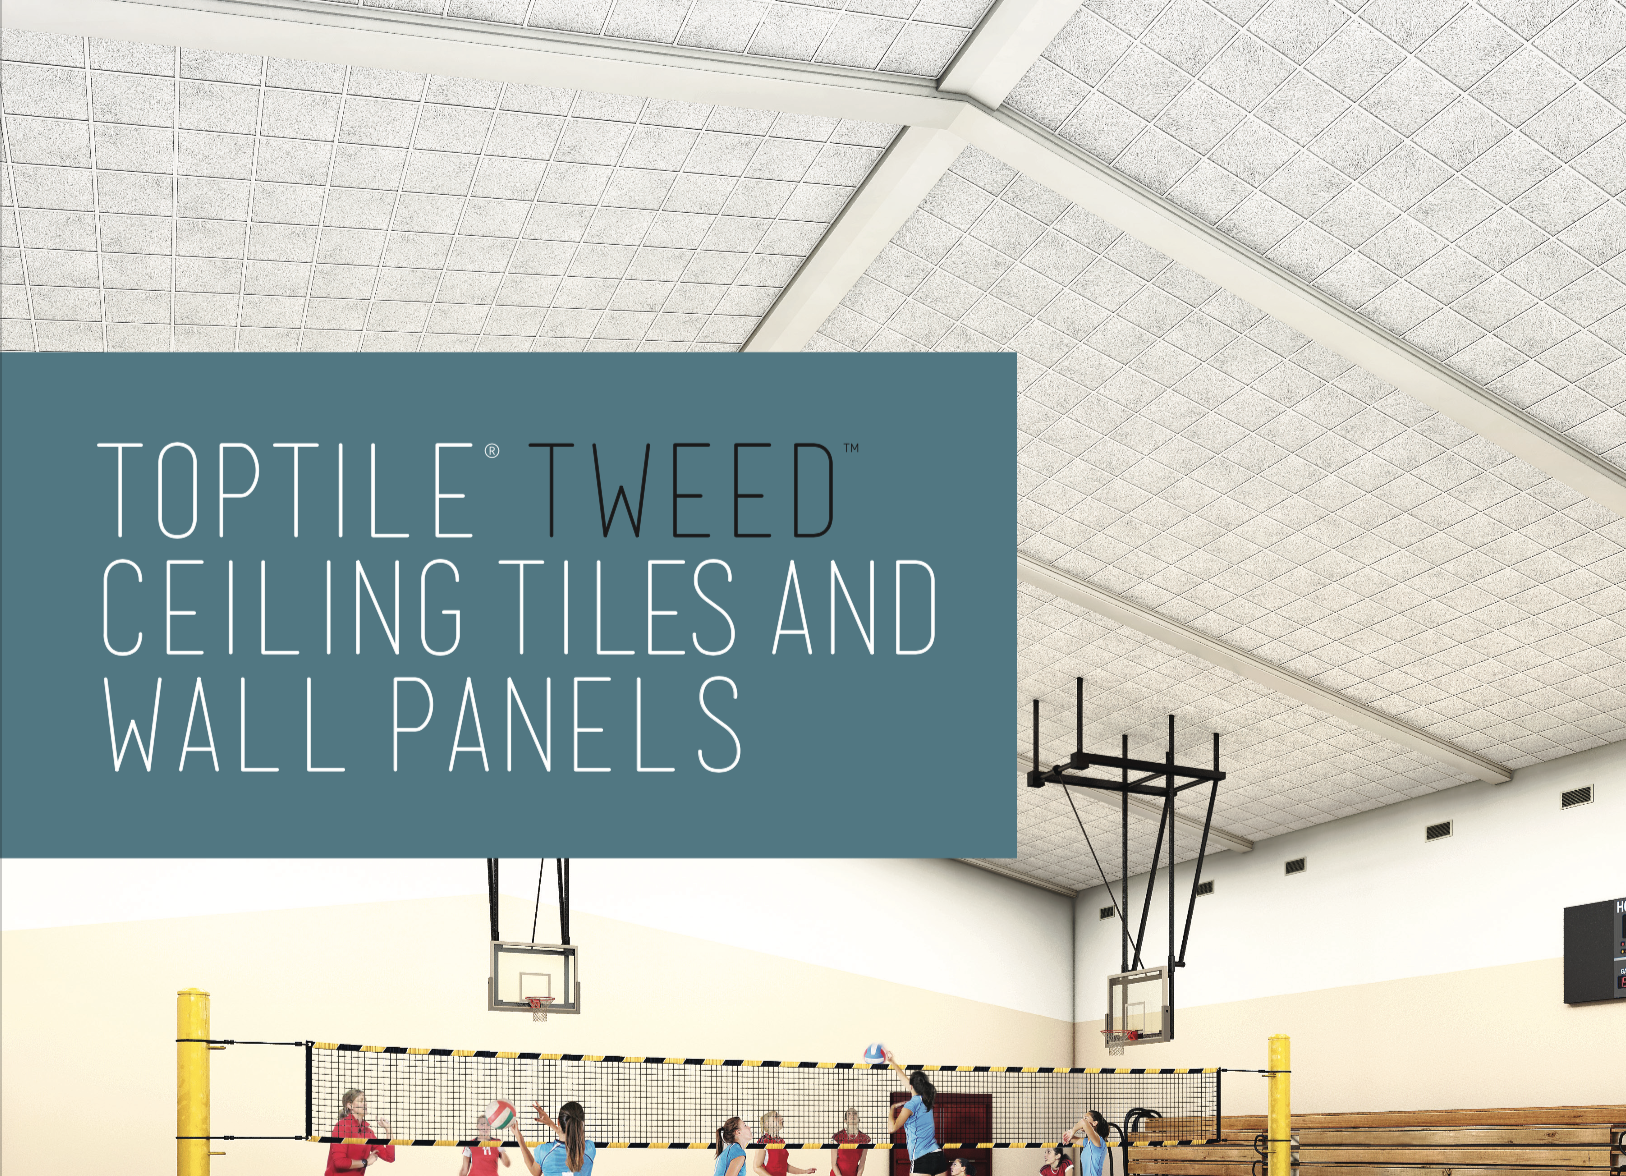 Tweed Ceiling Tiles Wall Panels Toptile Ceilings